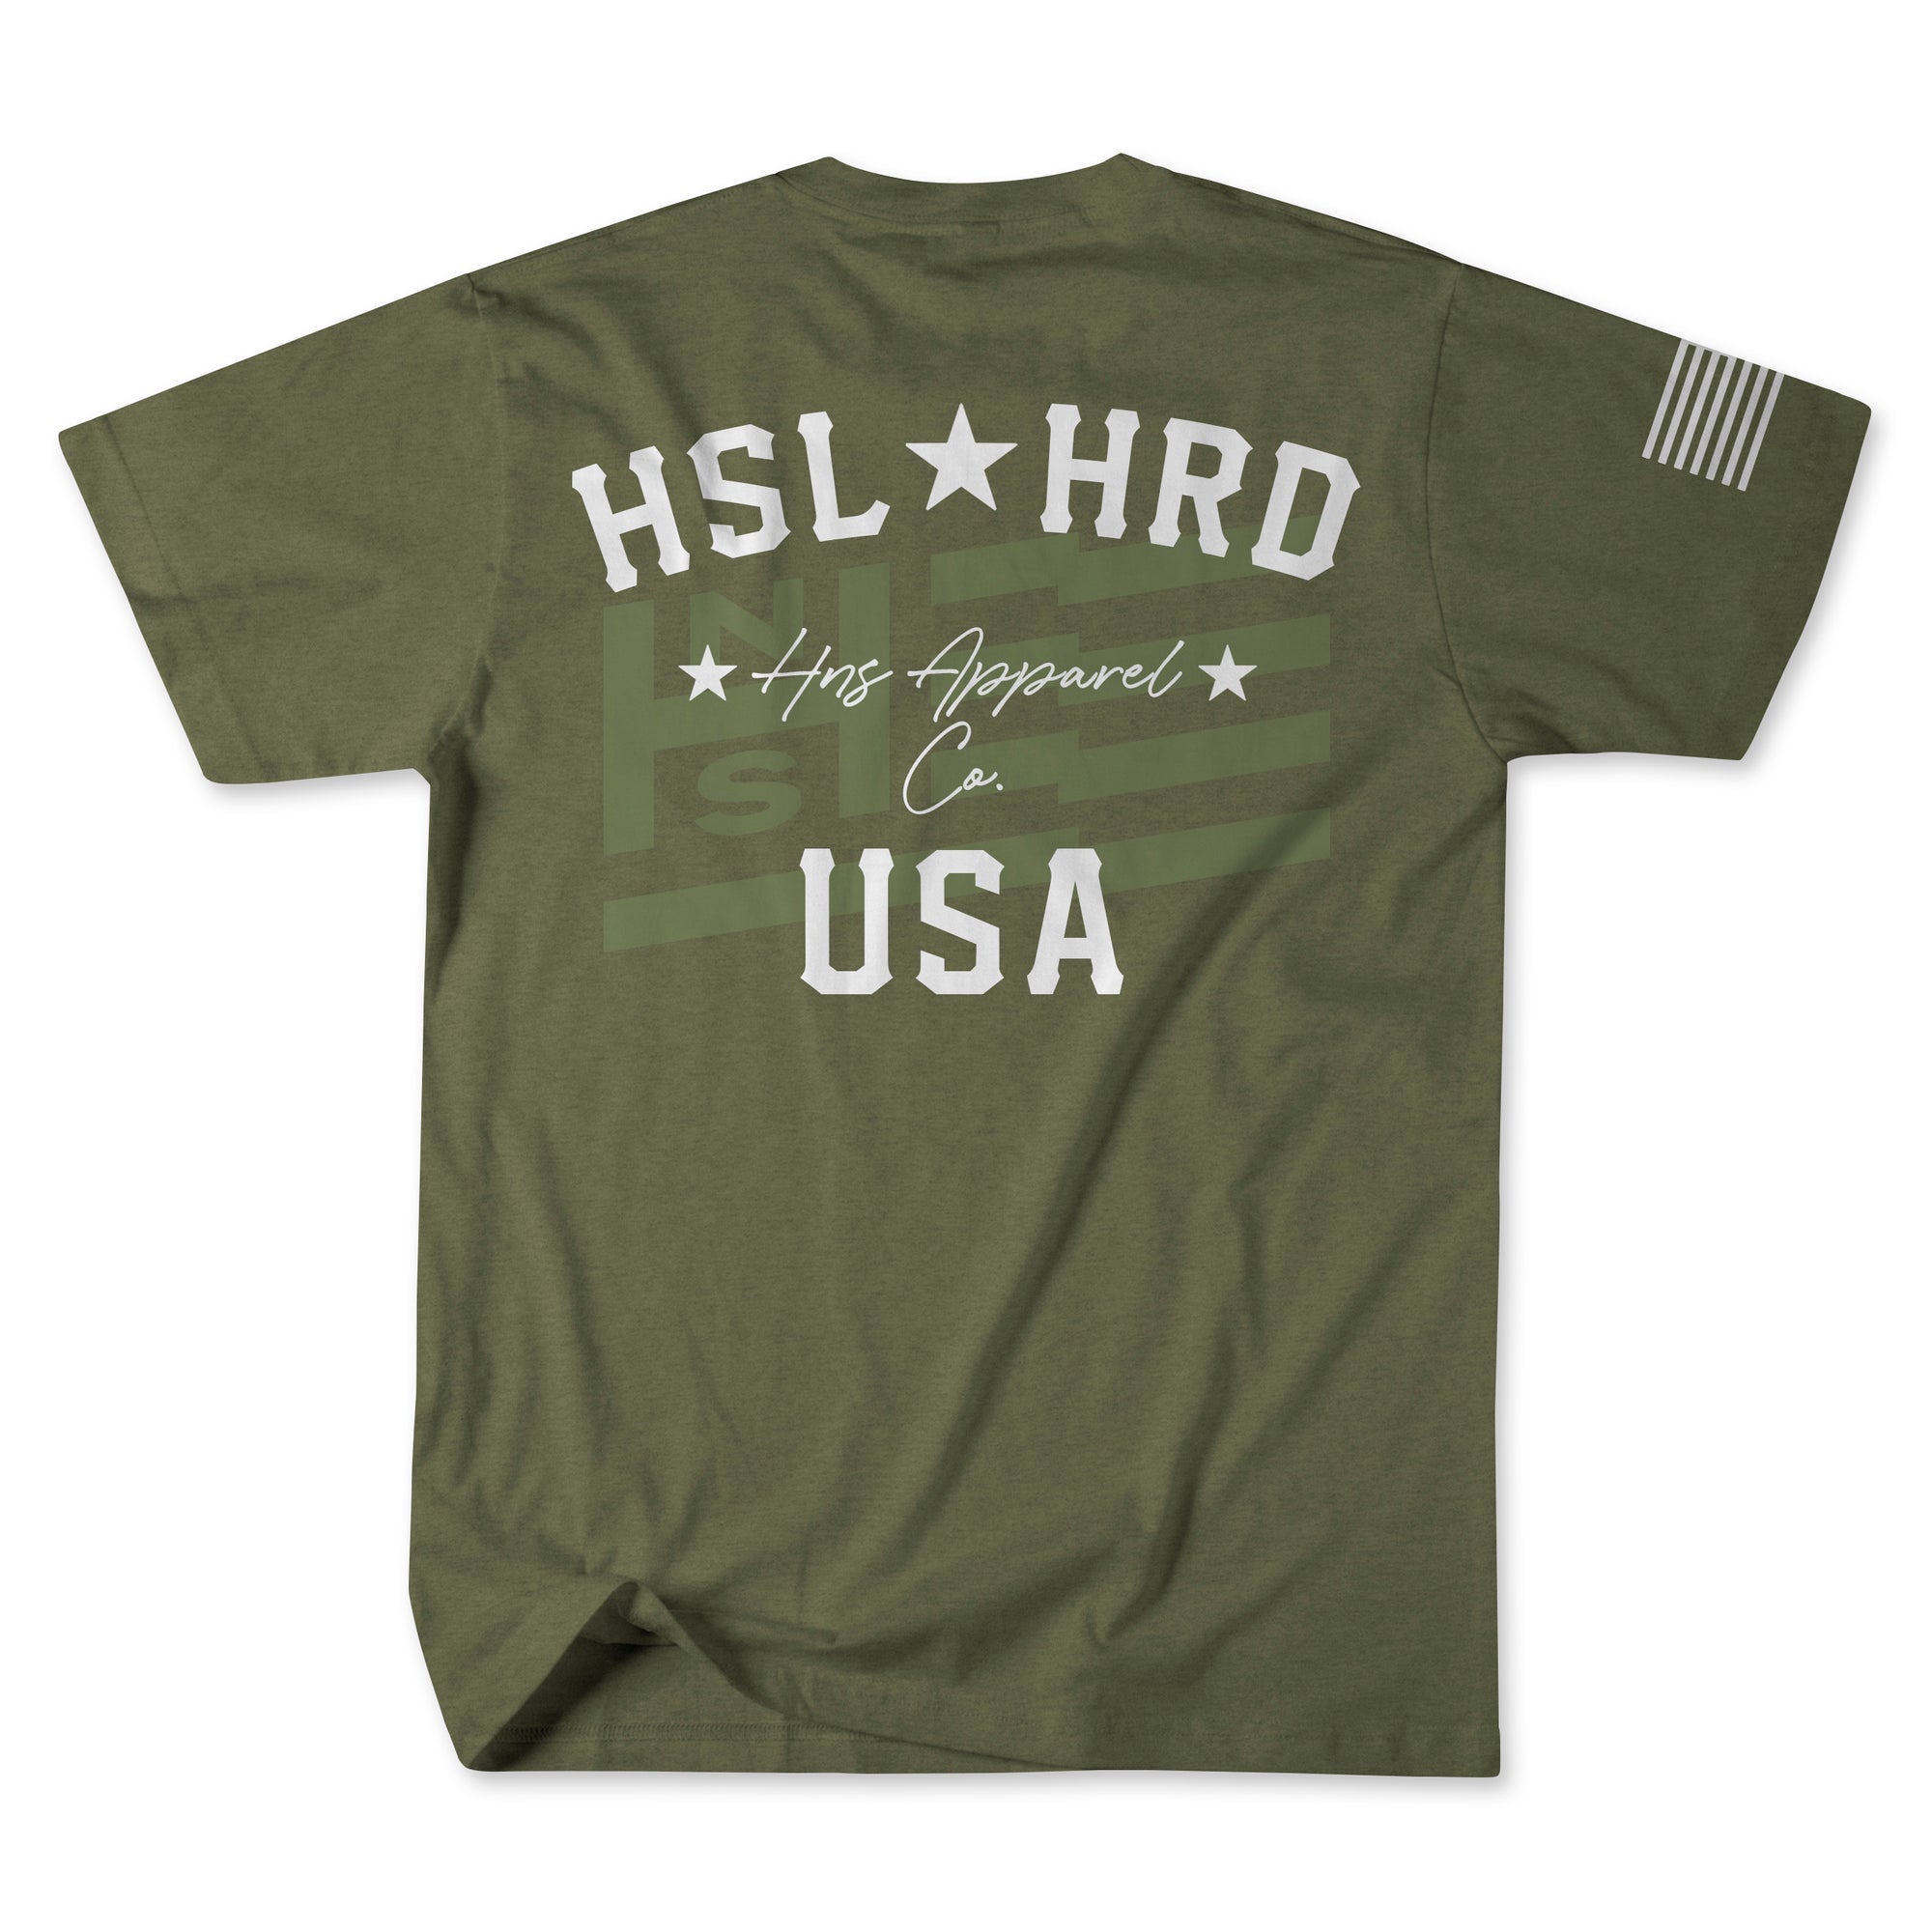 HSL HRD USA